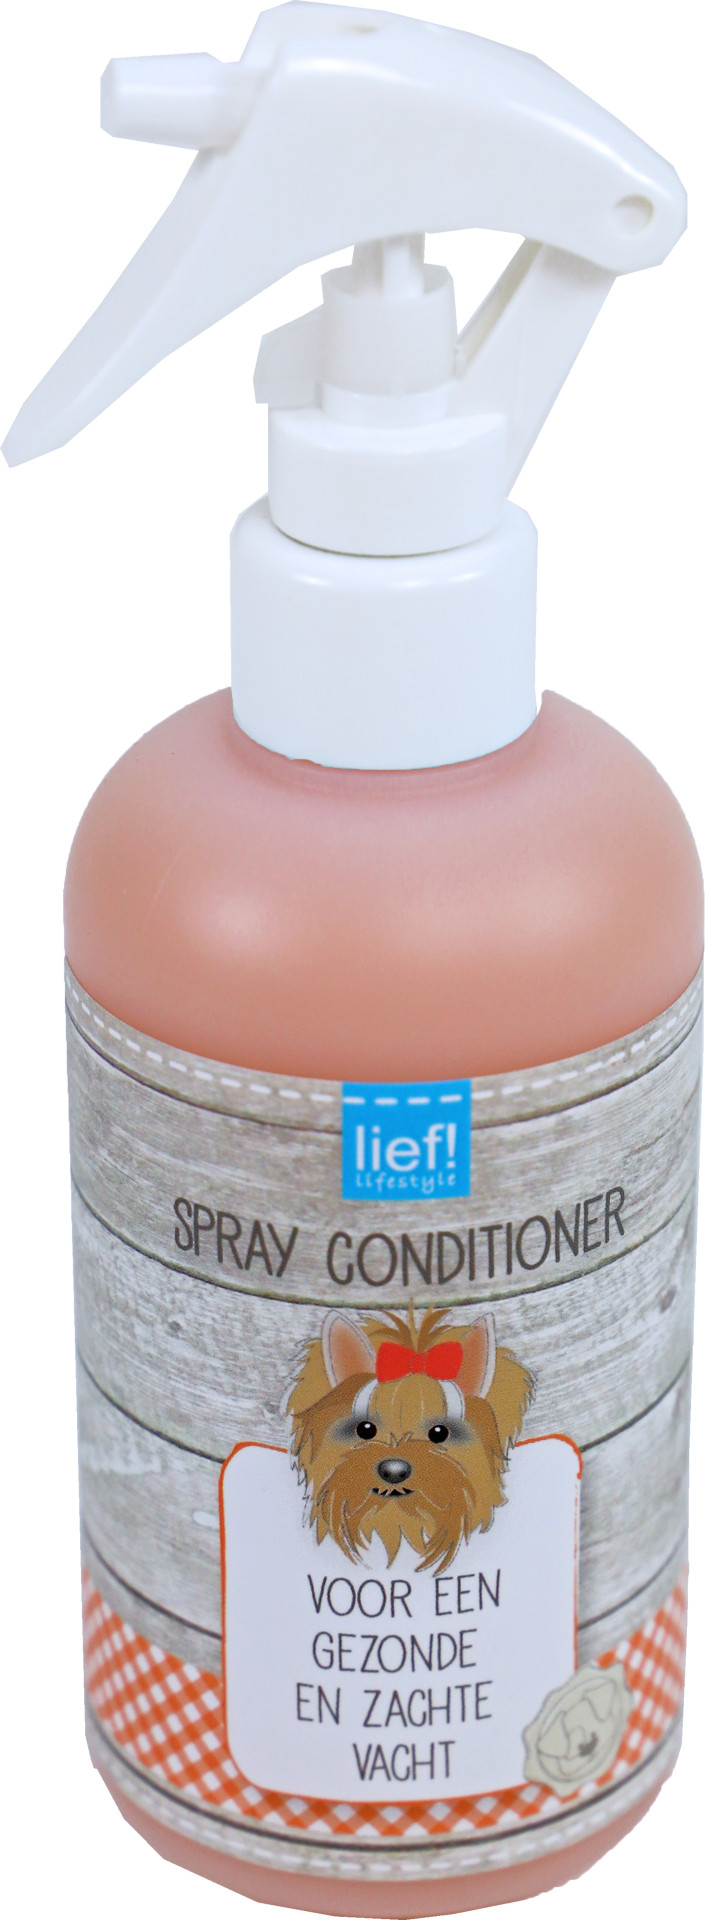 lief! lifestyle spray conditioner 250 ml